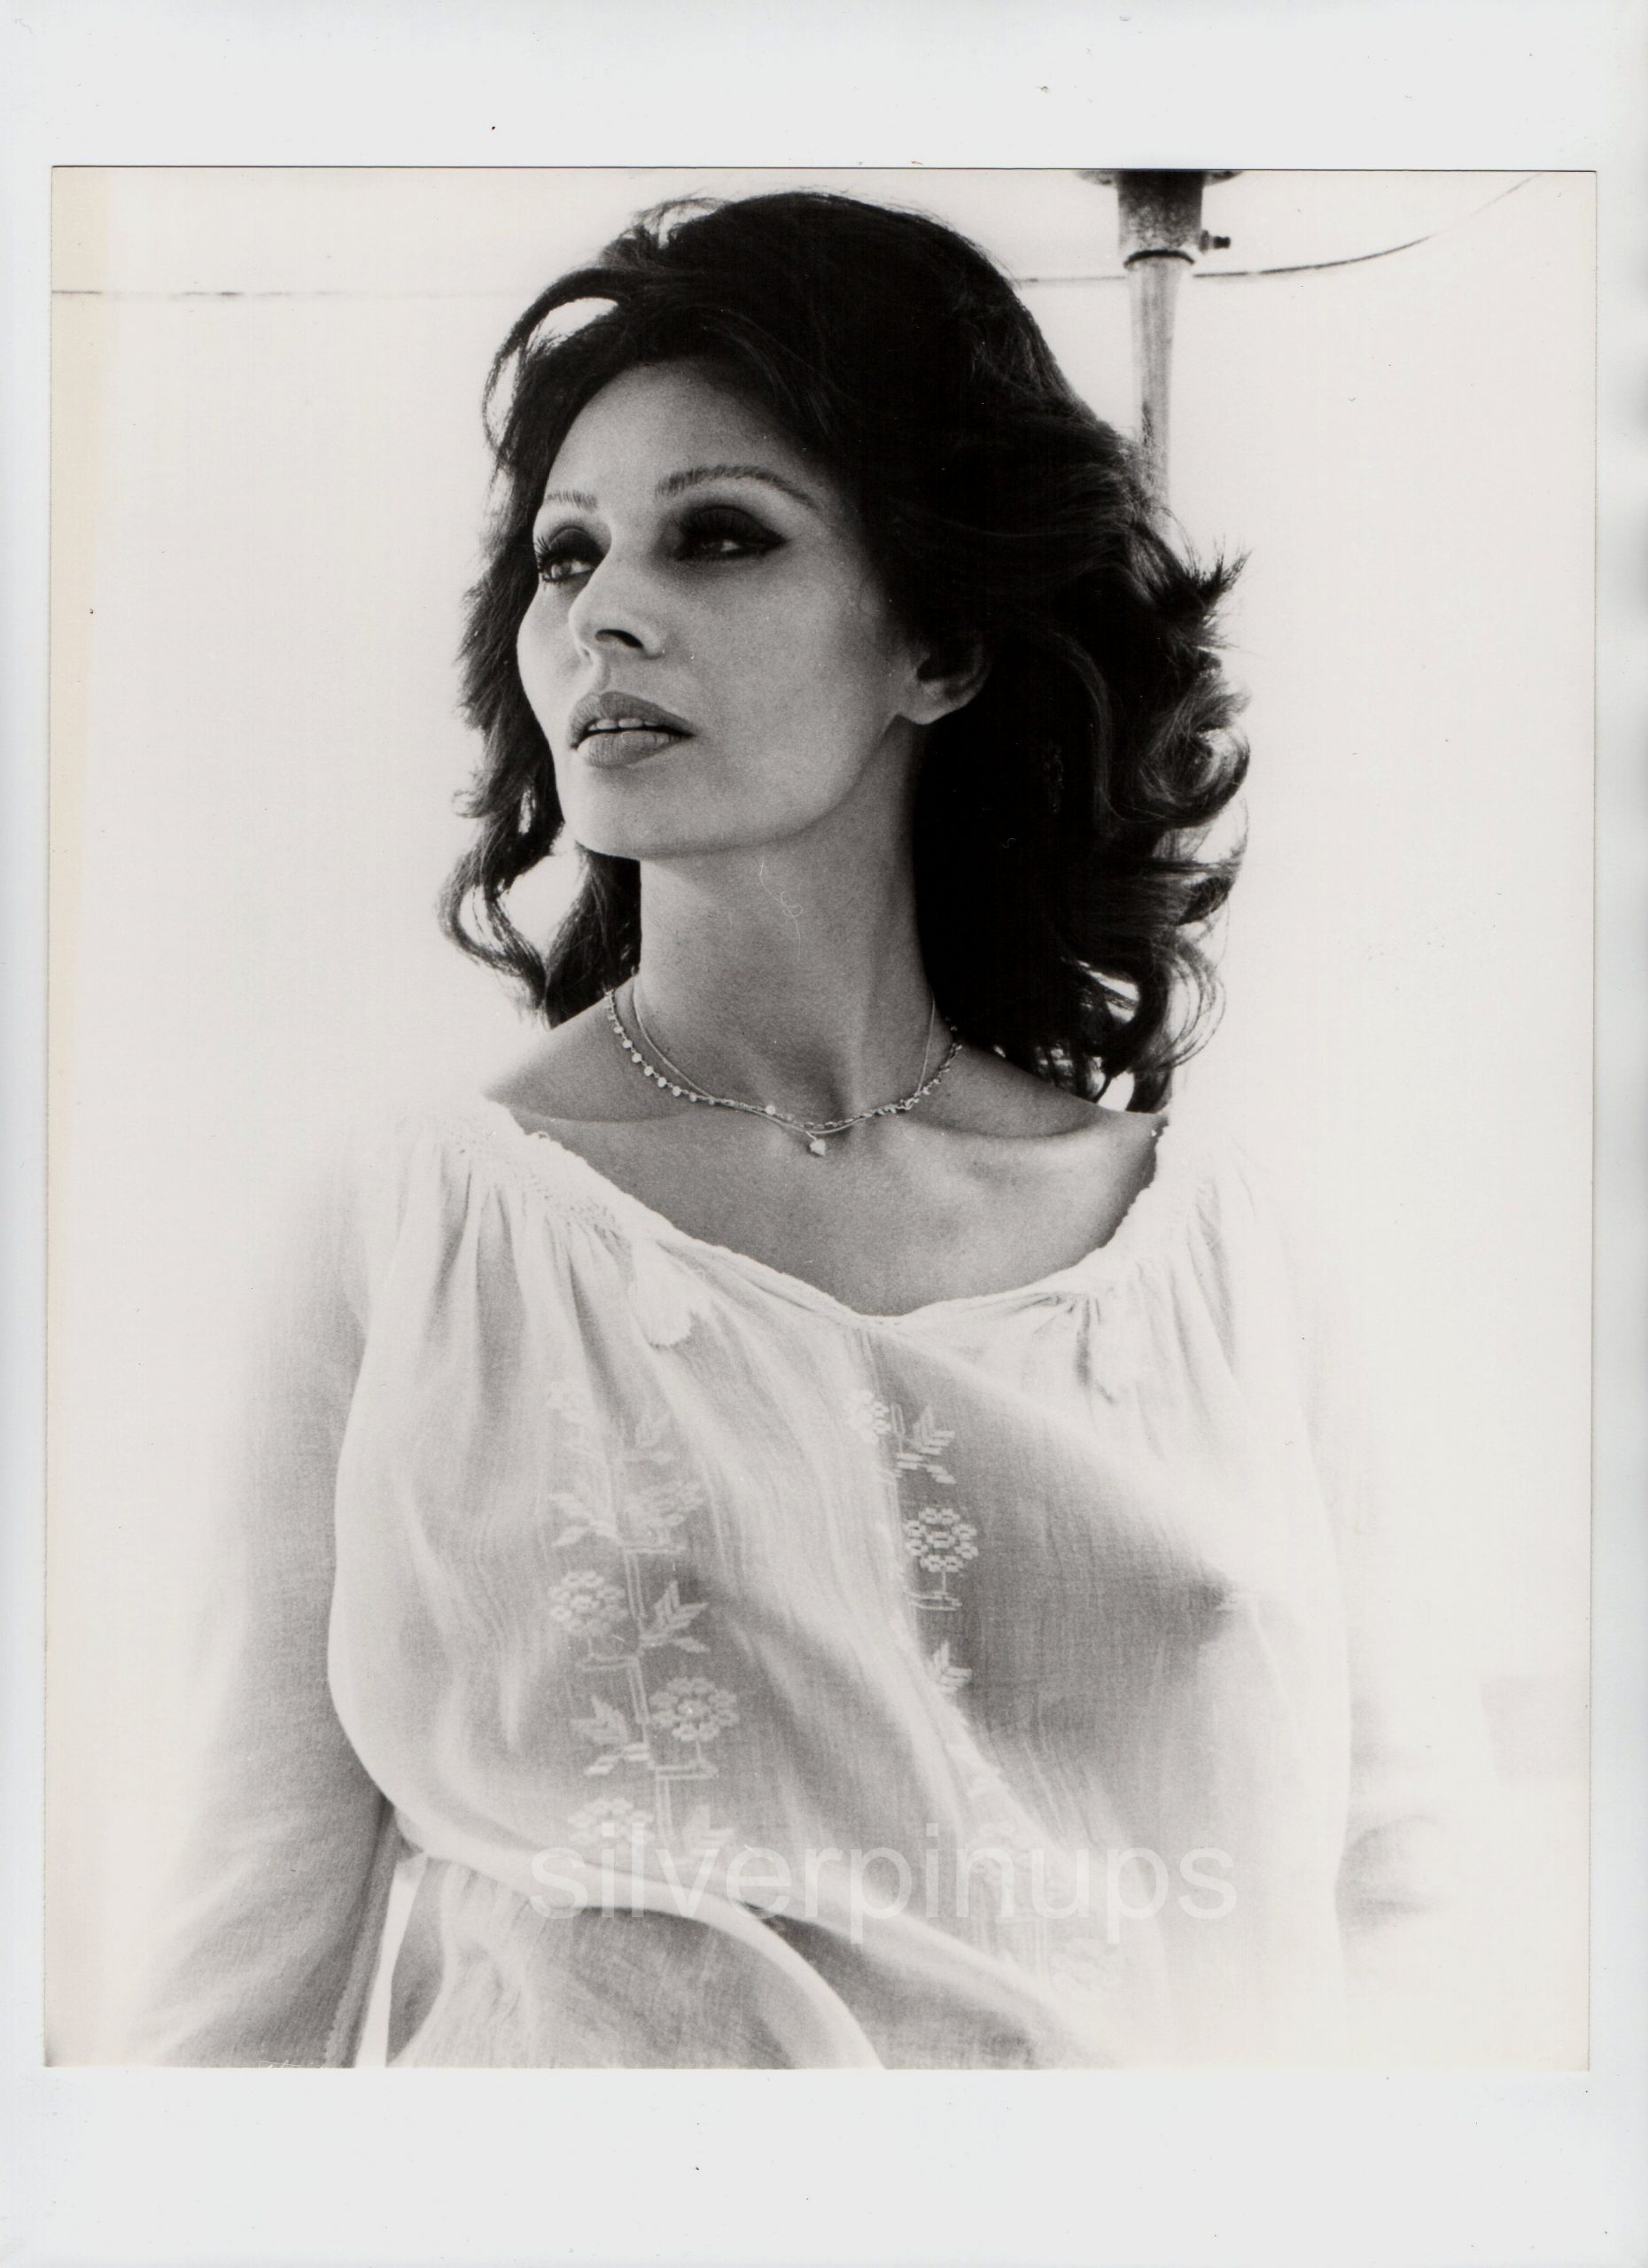 Busty Sophia Loren